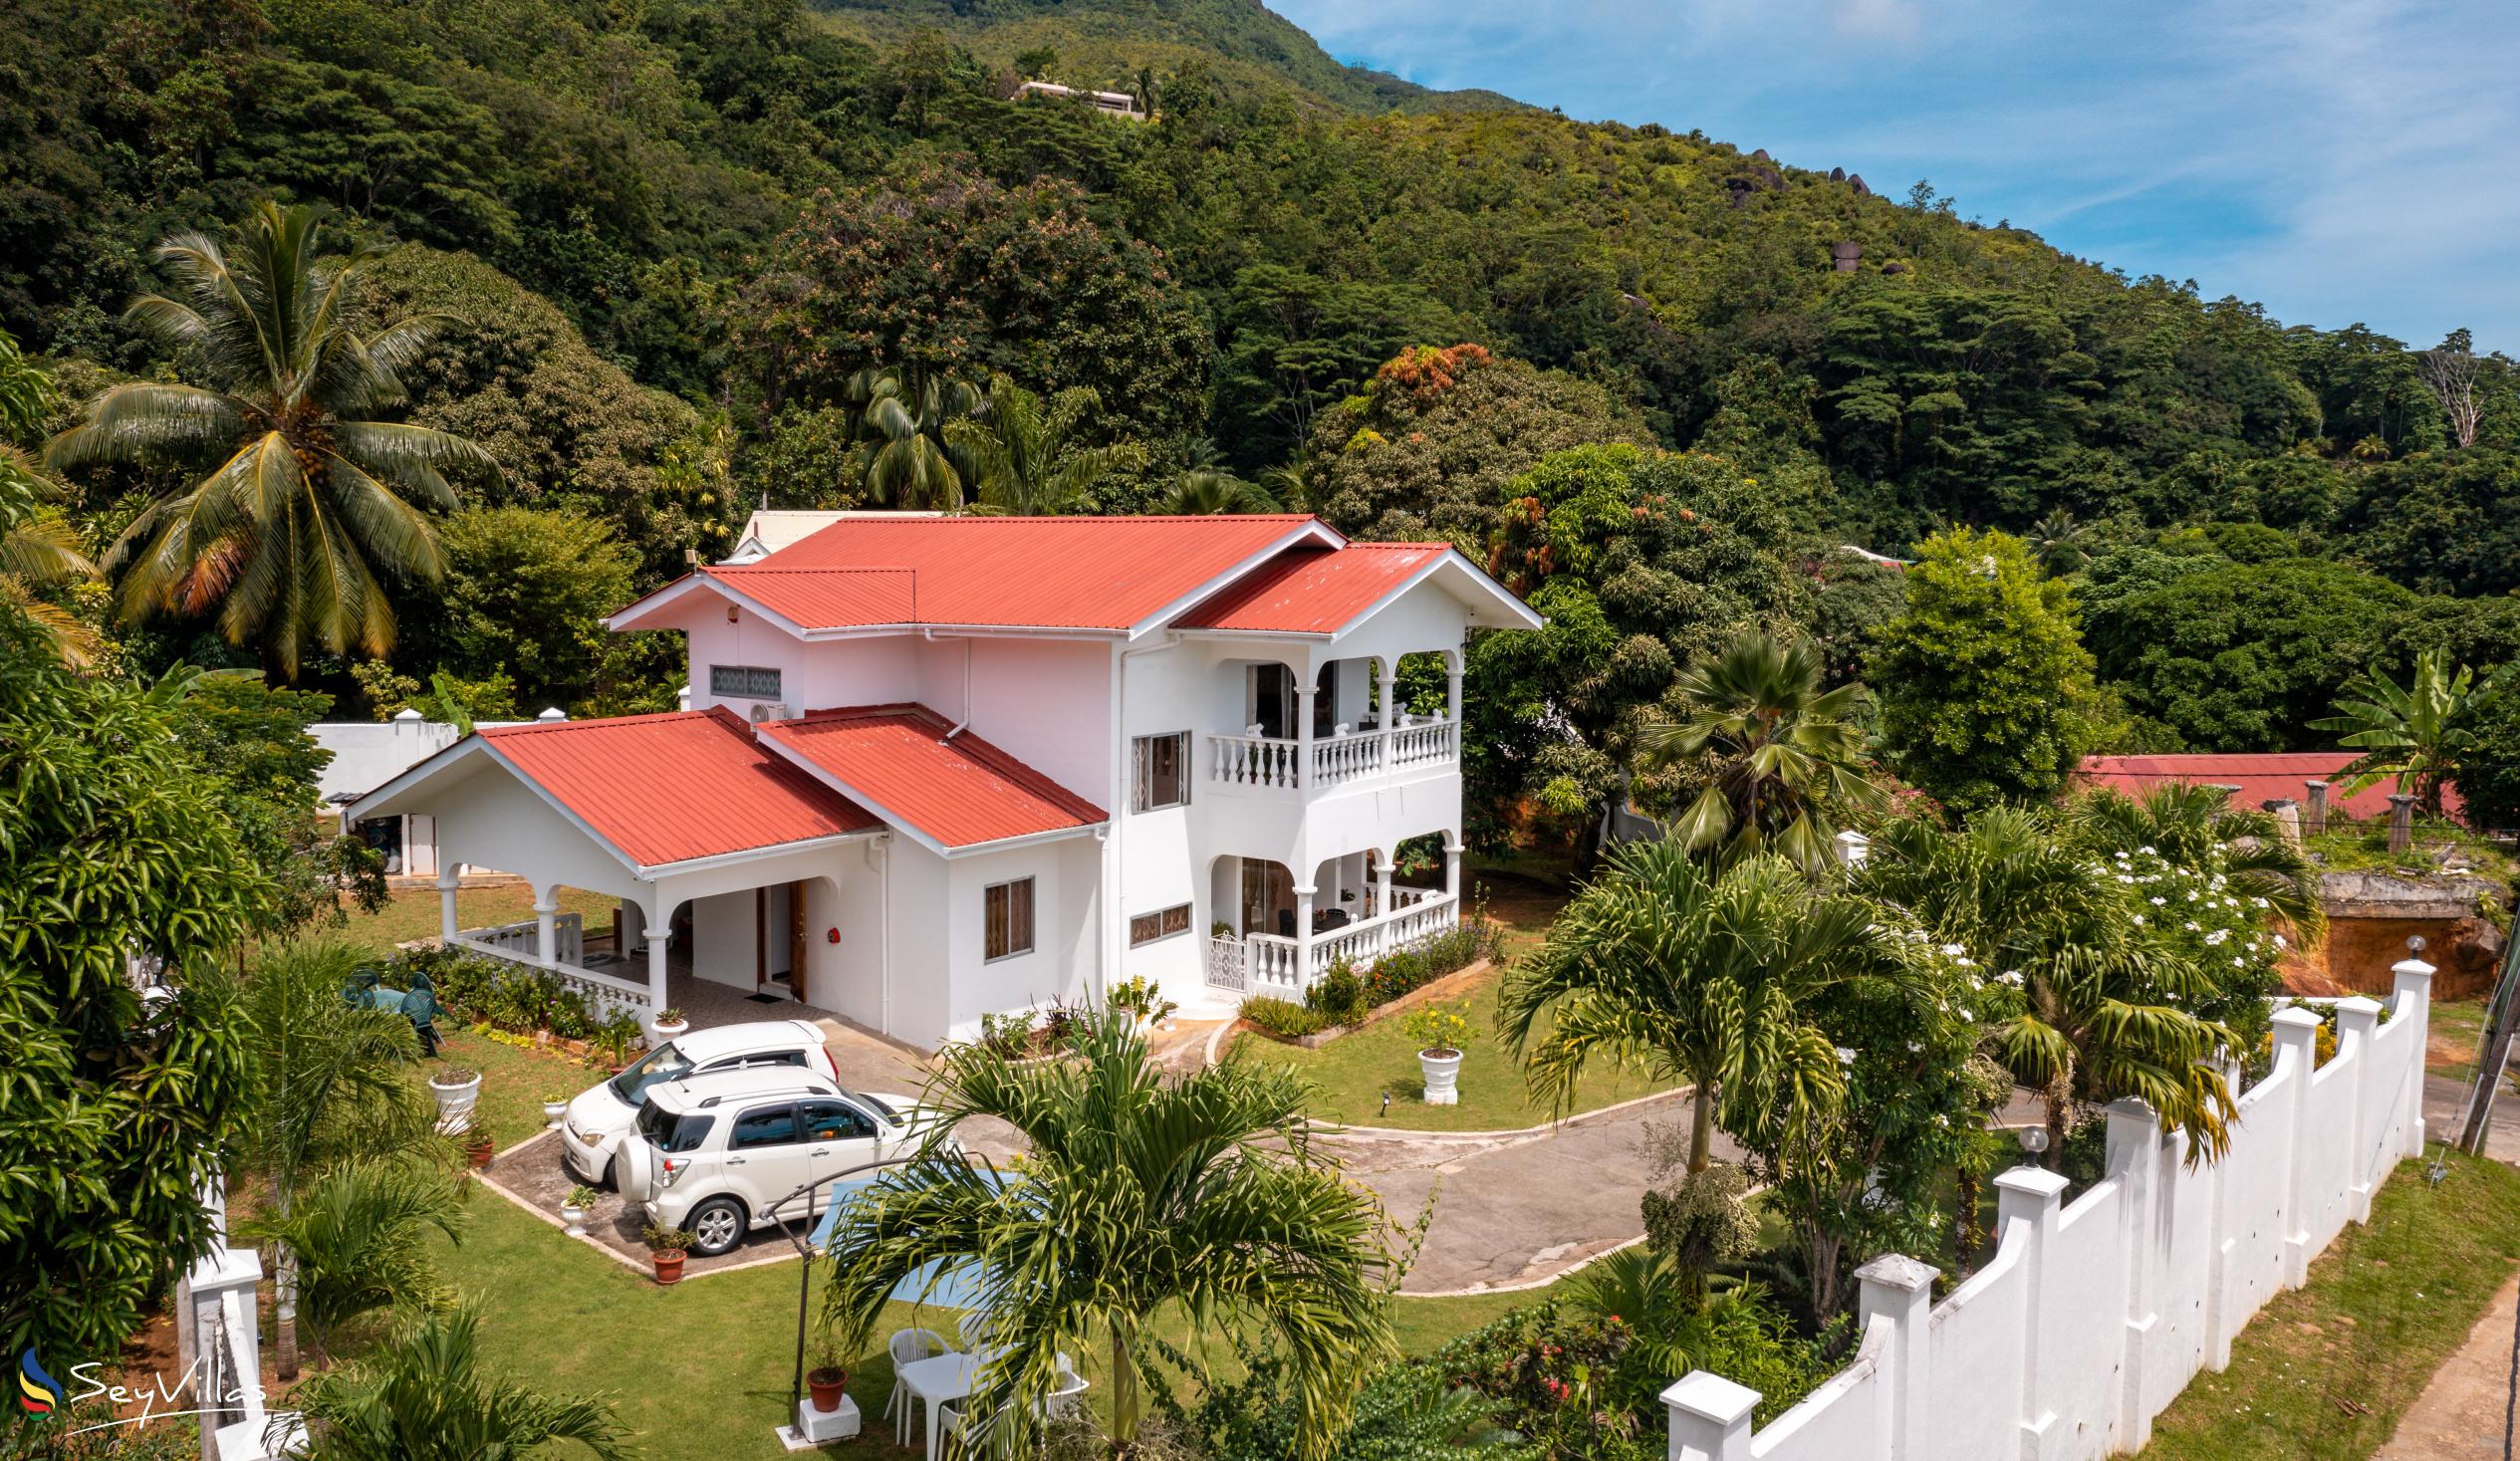 Foto 5: Villa Verde - Aussenbereich - Mahé (Seychellen)